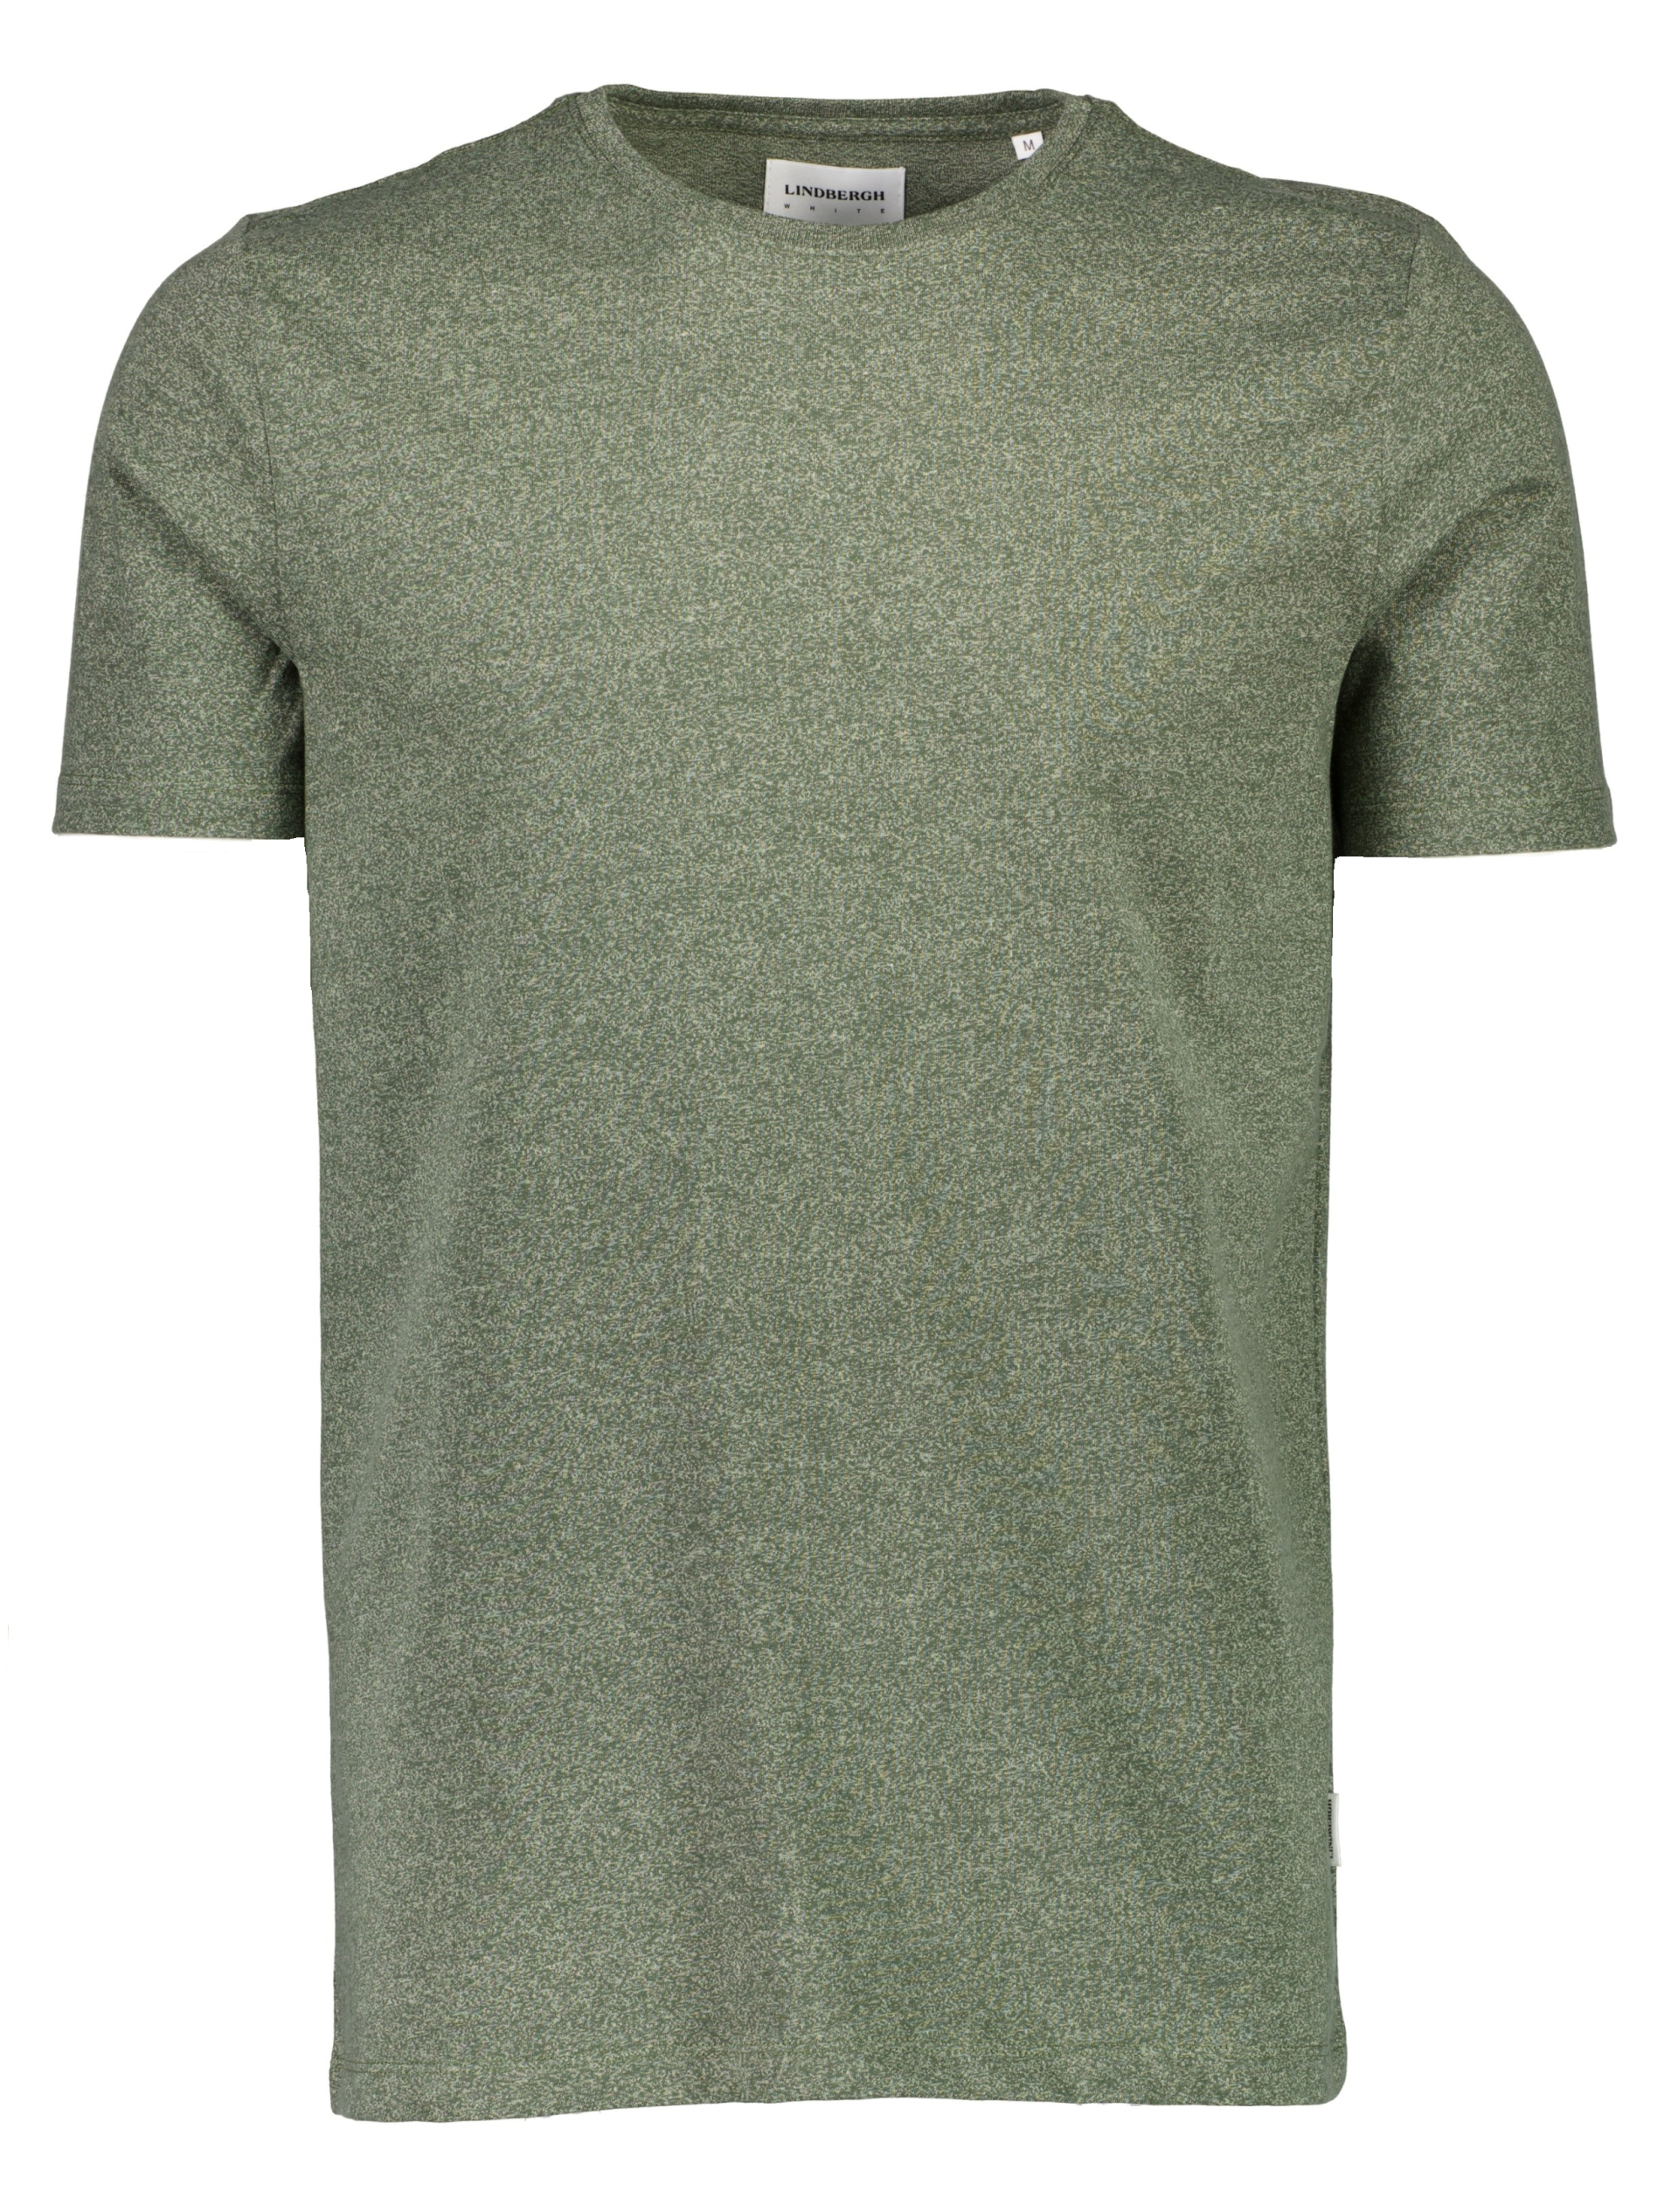 Lindbergh T-shirt grøn / dusty army mix